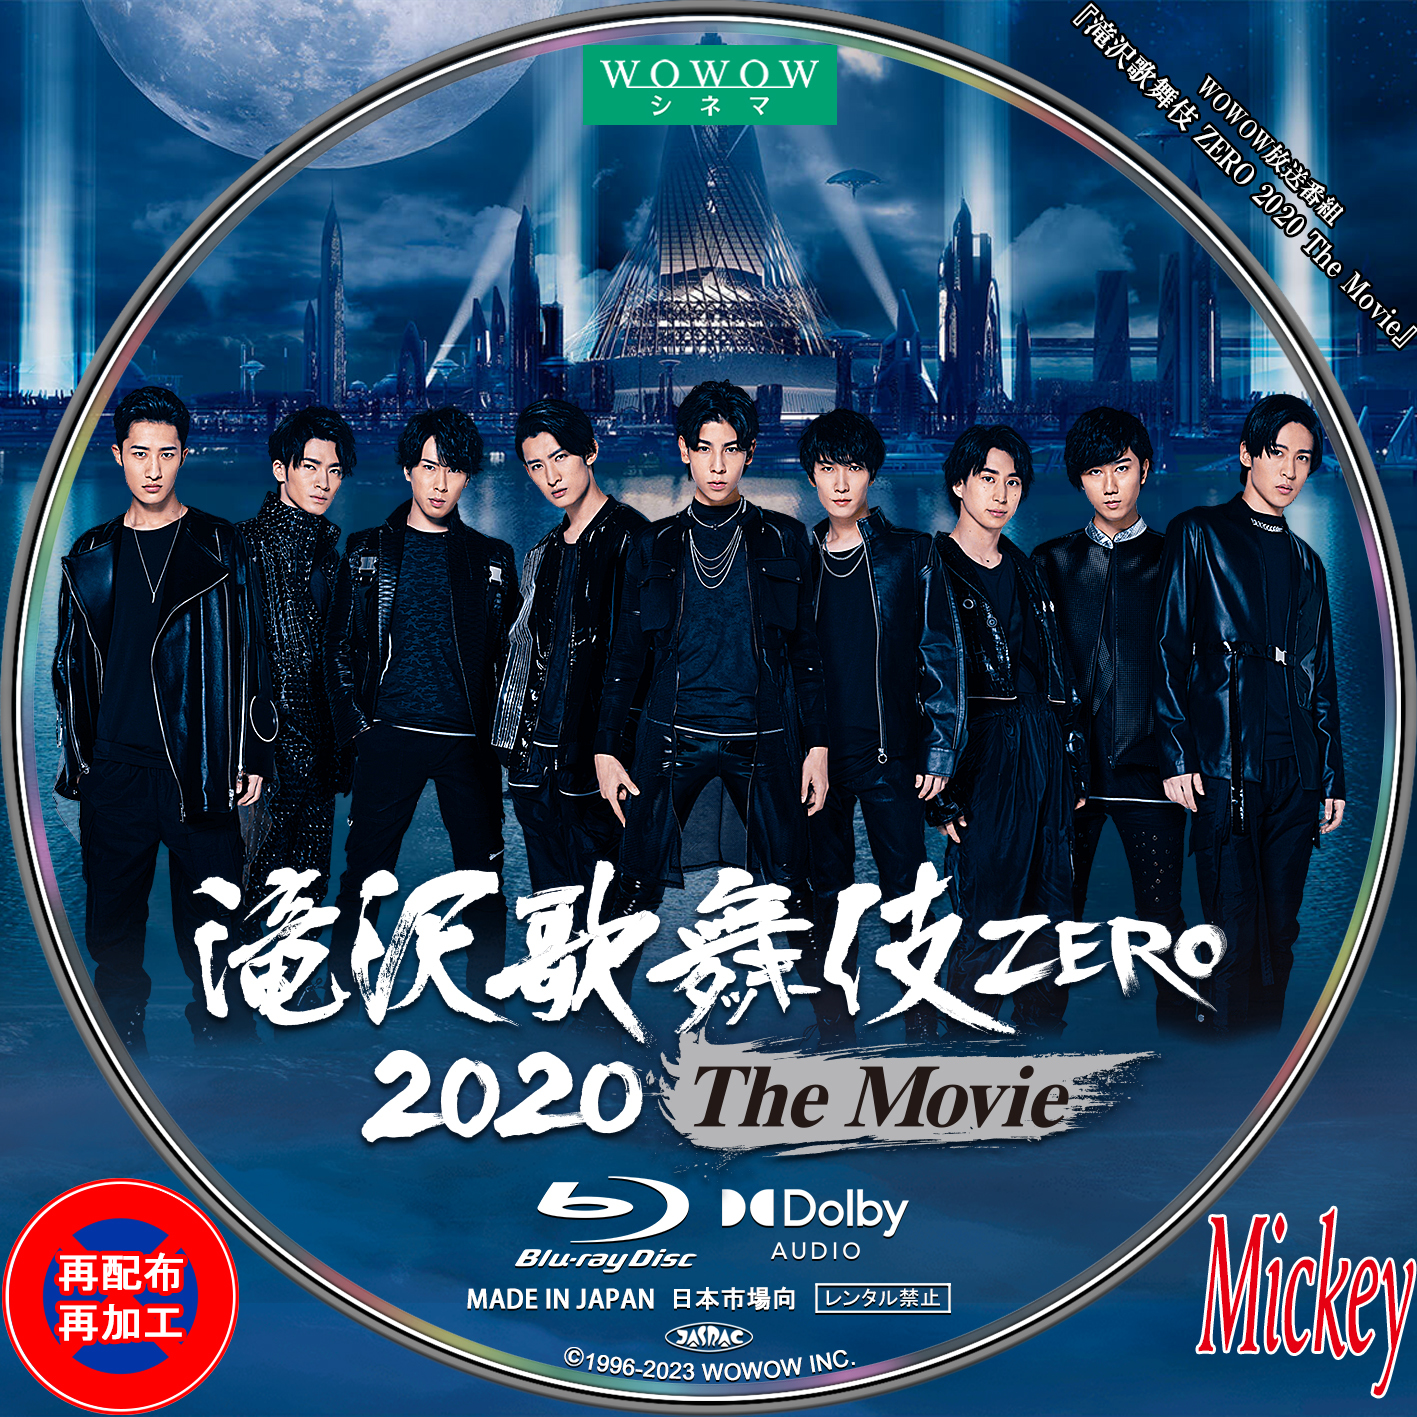 滝沢歌舞伎ZERO 2020 The Movie 通常版 特典付き バーゲンセール 